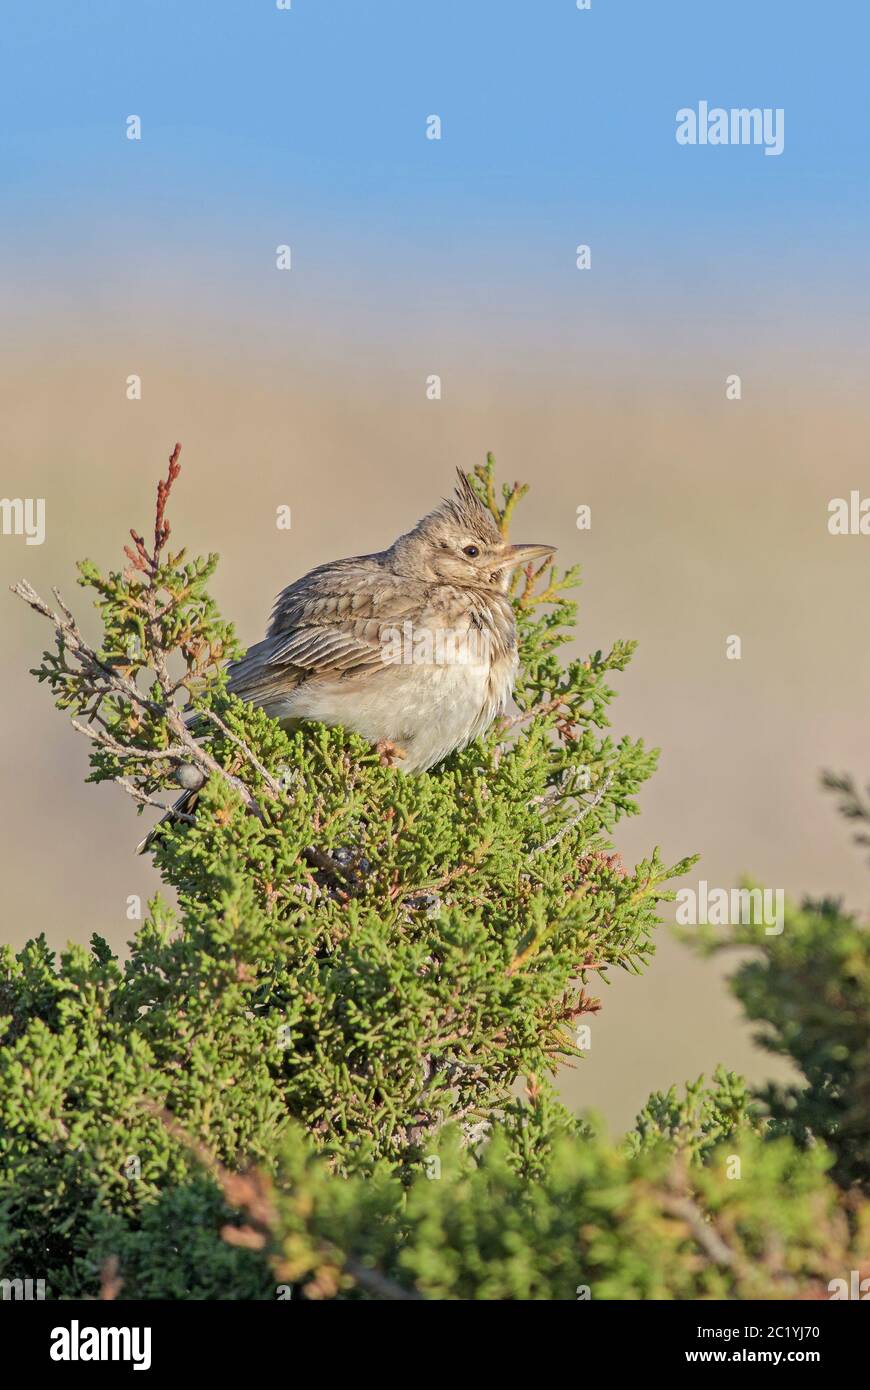 Lark à crête - Galerida cristata, oiseau perçant des prairies et des prairies européennes, île de Pag, Croatie. Banque D'Images